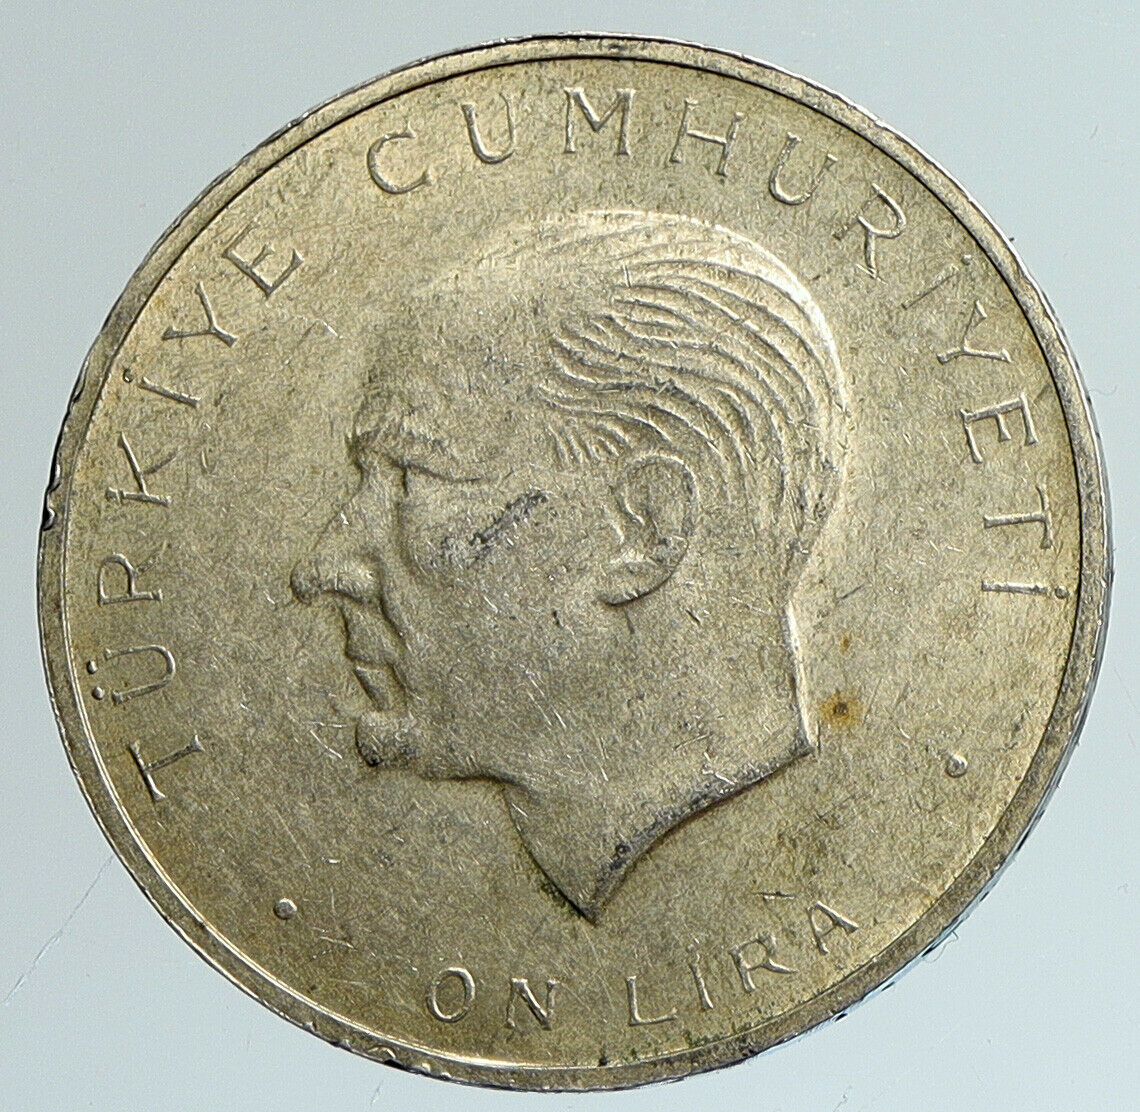 1960 Turkey 27 May REVOLUTION Silver 10 Lira Coin Mustafa Kemal Atatürk i111615